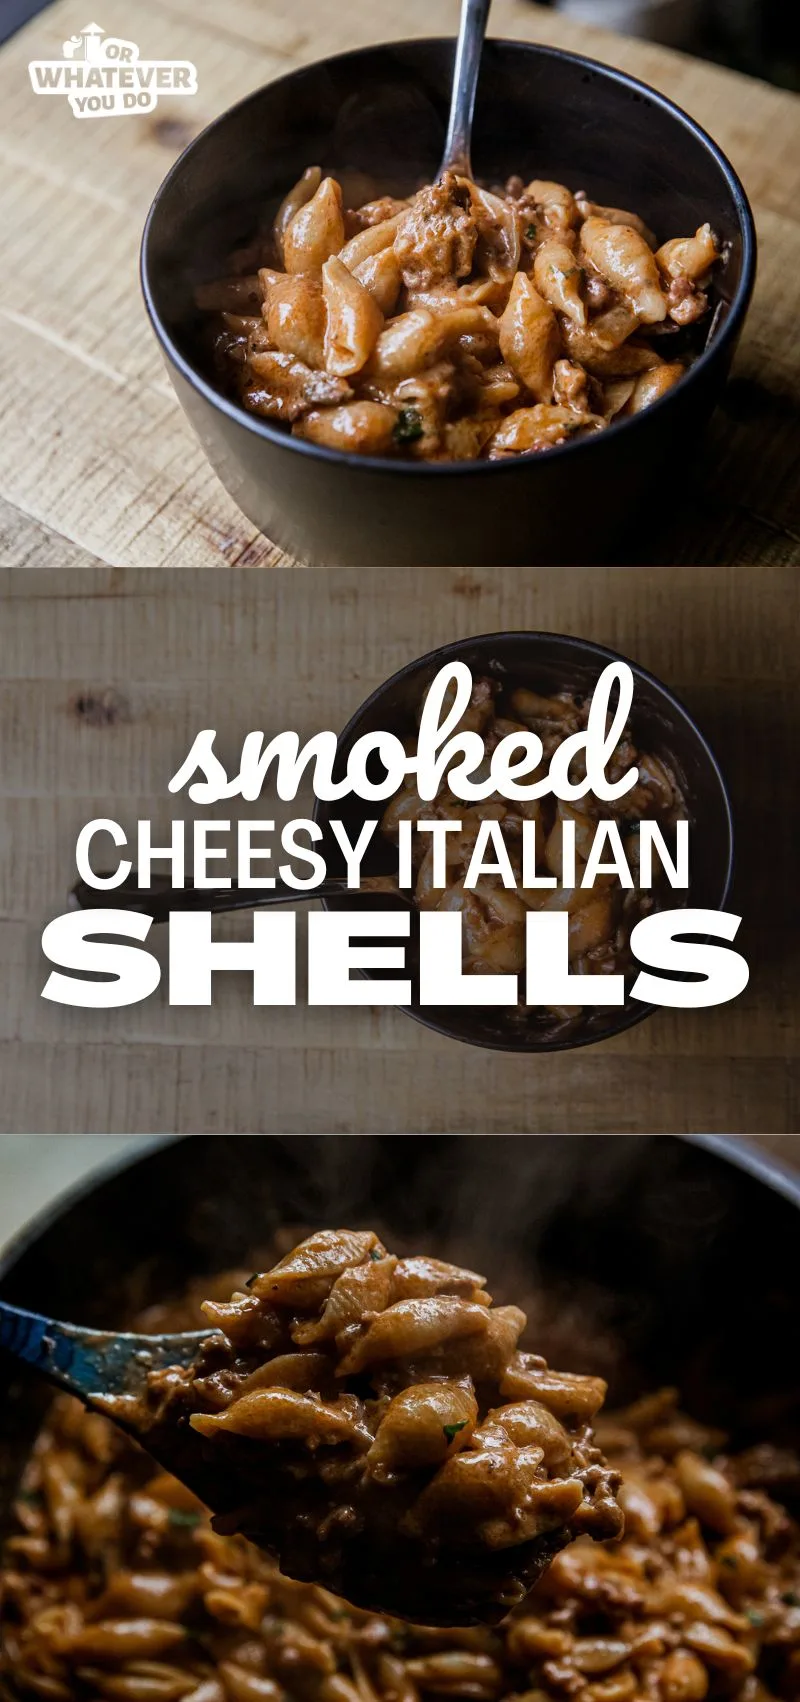 Smoked Cheesy Italian Shells